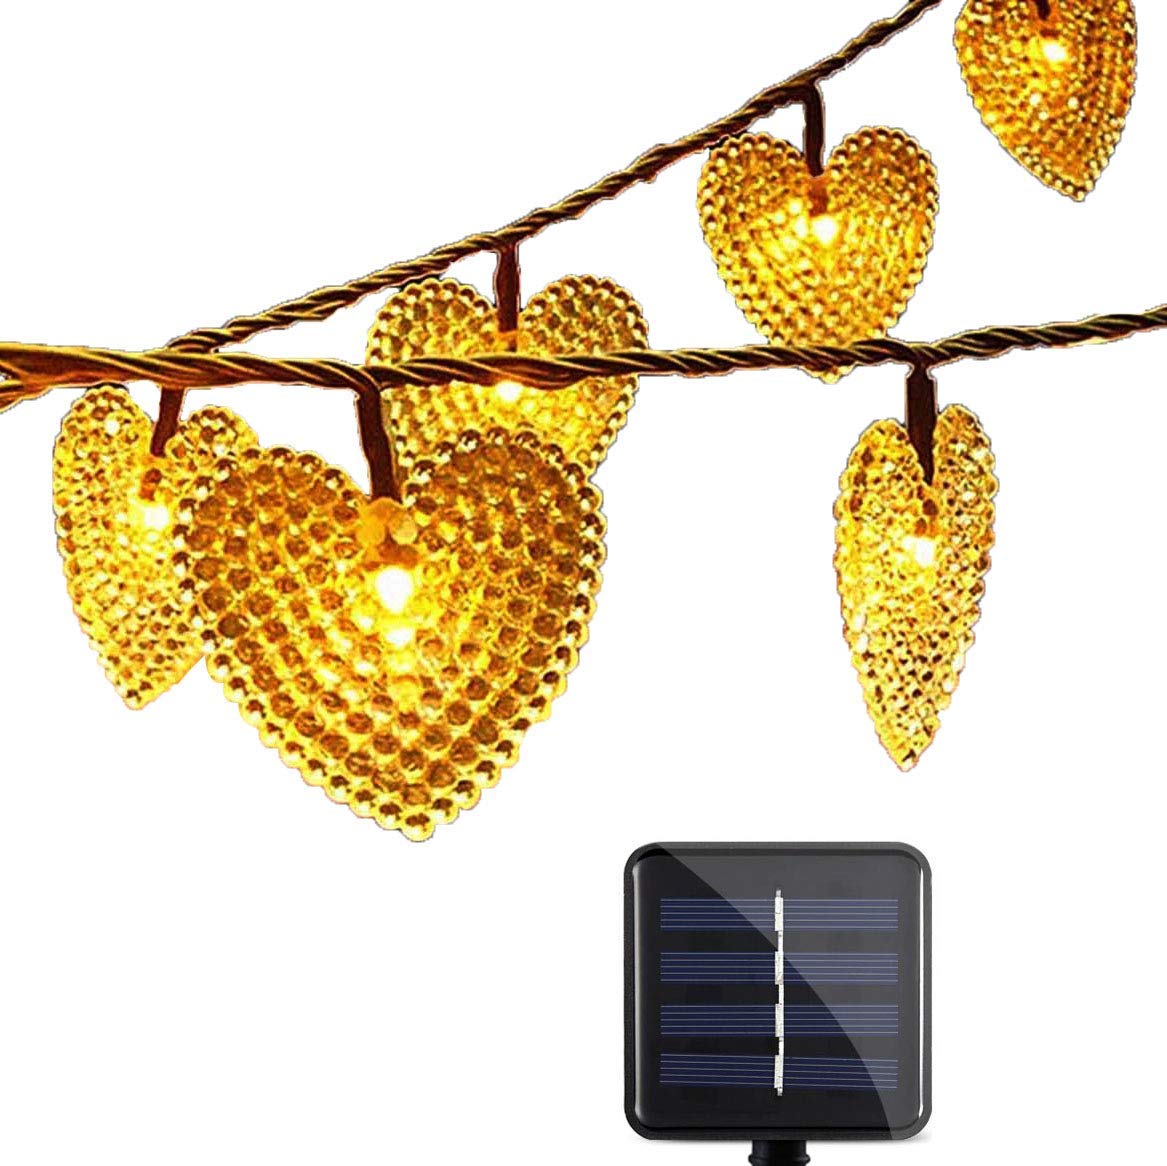 Solar Lichtschlauch Lichterkette,SUAVER Wasserdicht 20ft 30LED Herzform Außenlichterkette Weihnachtsbeleuchtung Für Hochzeit Festival Party Garten Dekoration(Warmweiß)